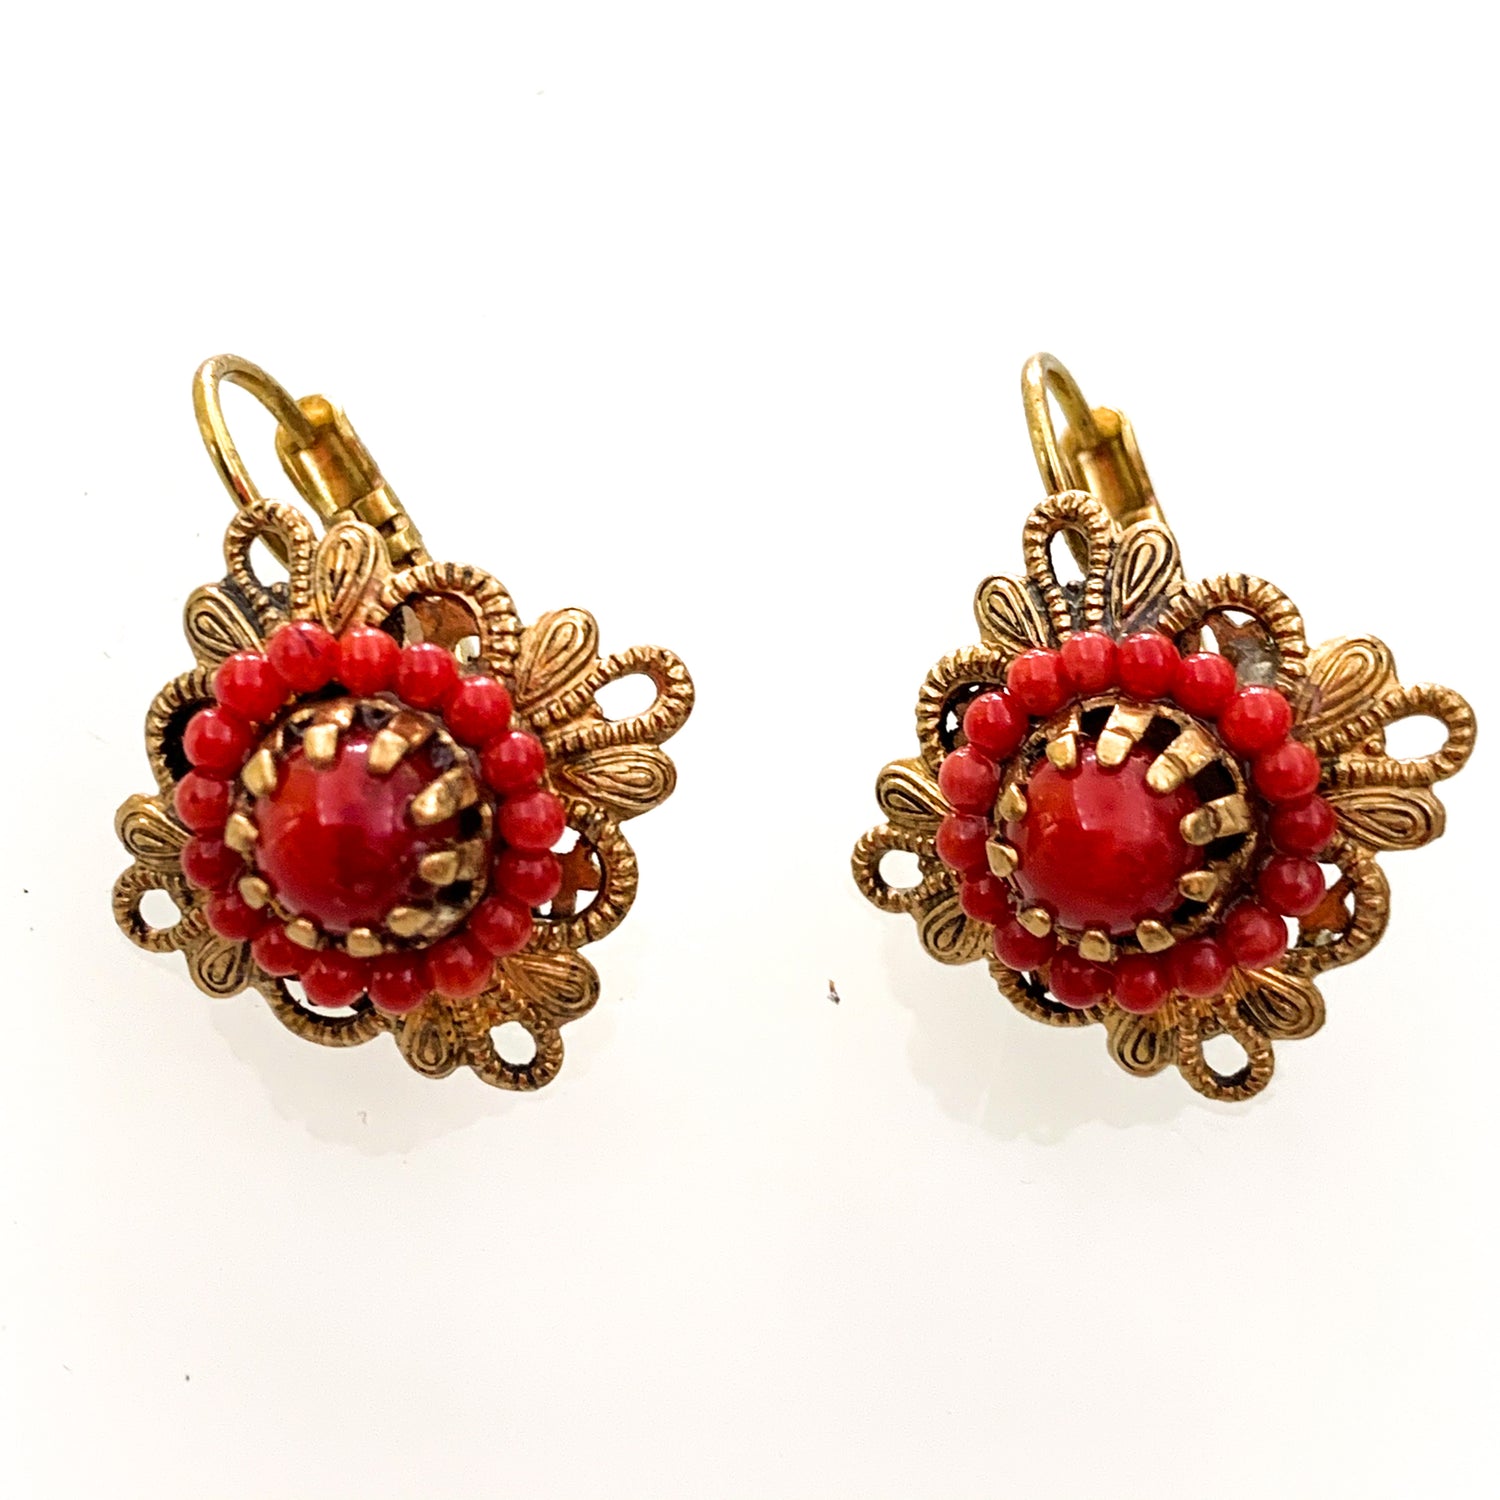 Orecchini in bijoux bagnati in oro a forma di rombo con coralli rossi.  Dimensione 2 cm.  Chiusura a monachella.  Spedizione gratuita con confezione regalo.